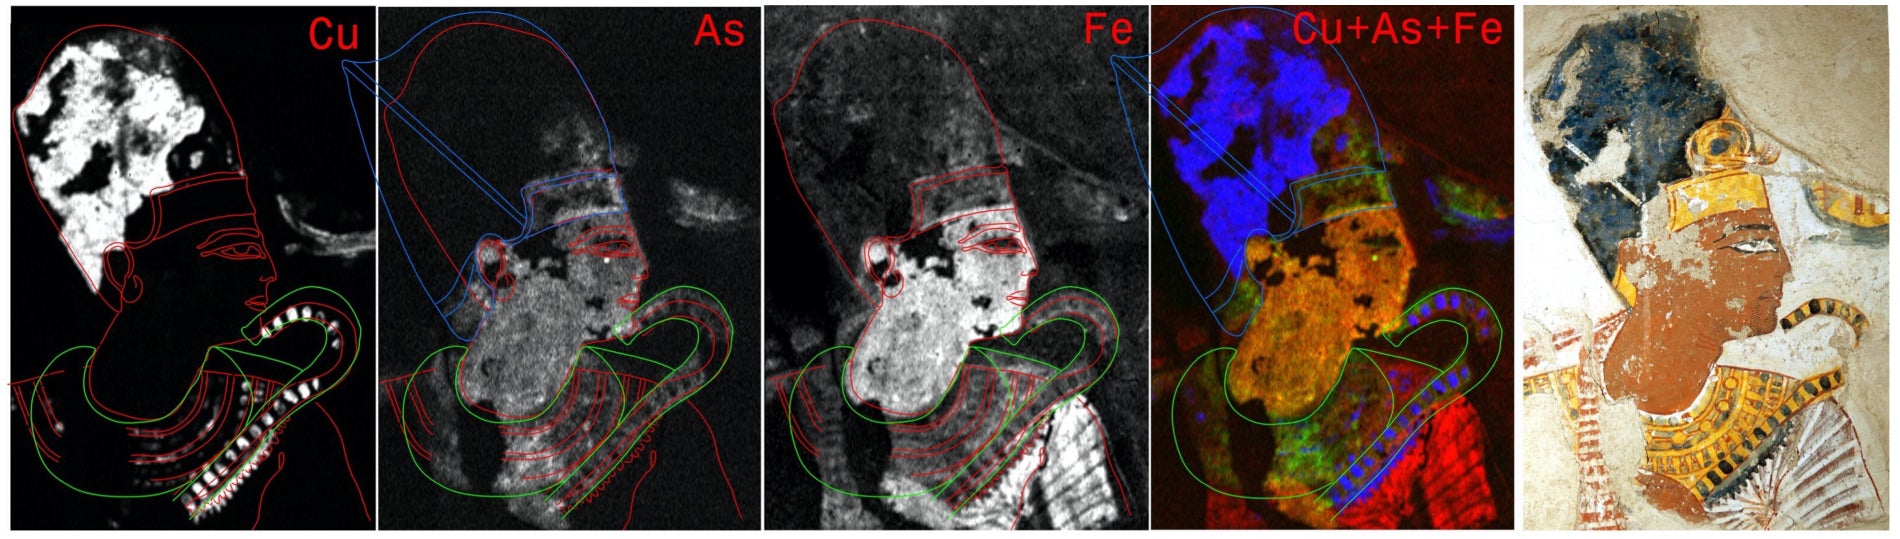 تصوير الأشعة السينية الفلورية التي تظهر جوانب رمسيس الثاني غير المرئية للعين المجردة.